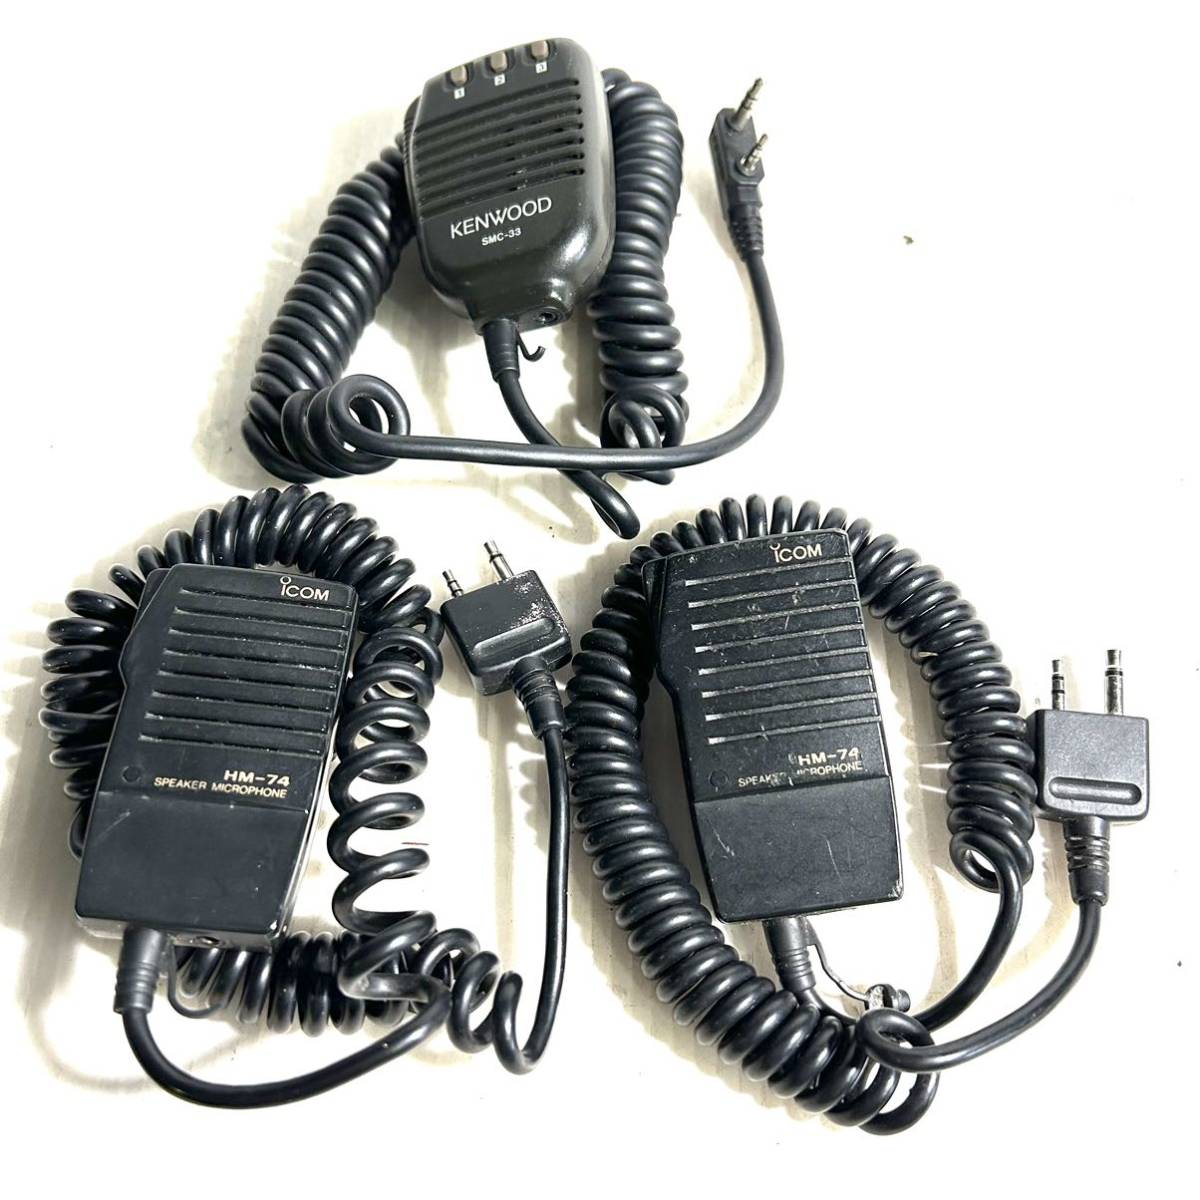 アイコム スピーカーマイクHM-74 携帯無線機用　ハンディ機用 KENYOOD SMF-33 3点セット(B1748)_画像1